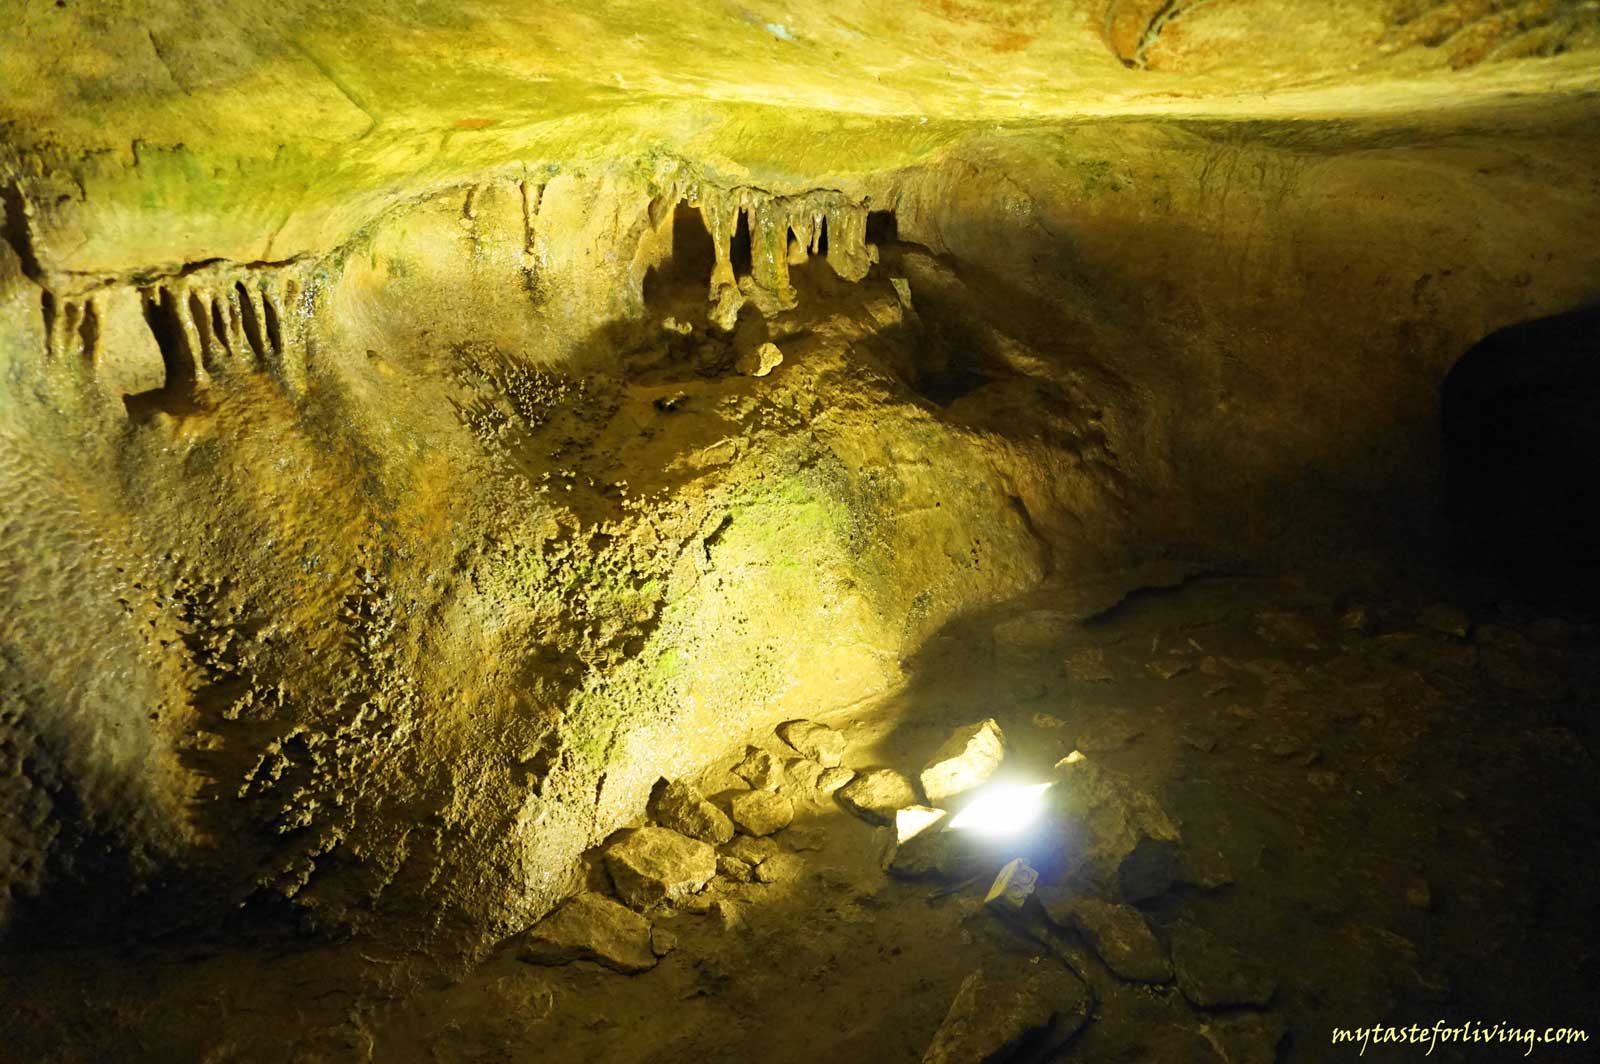 Пещера Орлова чука се намира на около 40 км от Русе, в природния парк Русенски Лом, близо до село Пепелина, на левия склон на река Черни Лом. Обявена за природна забележителност и археологически паметник на културата от национално значение, днес тя е втората по големина пещера в България.